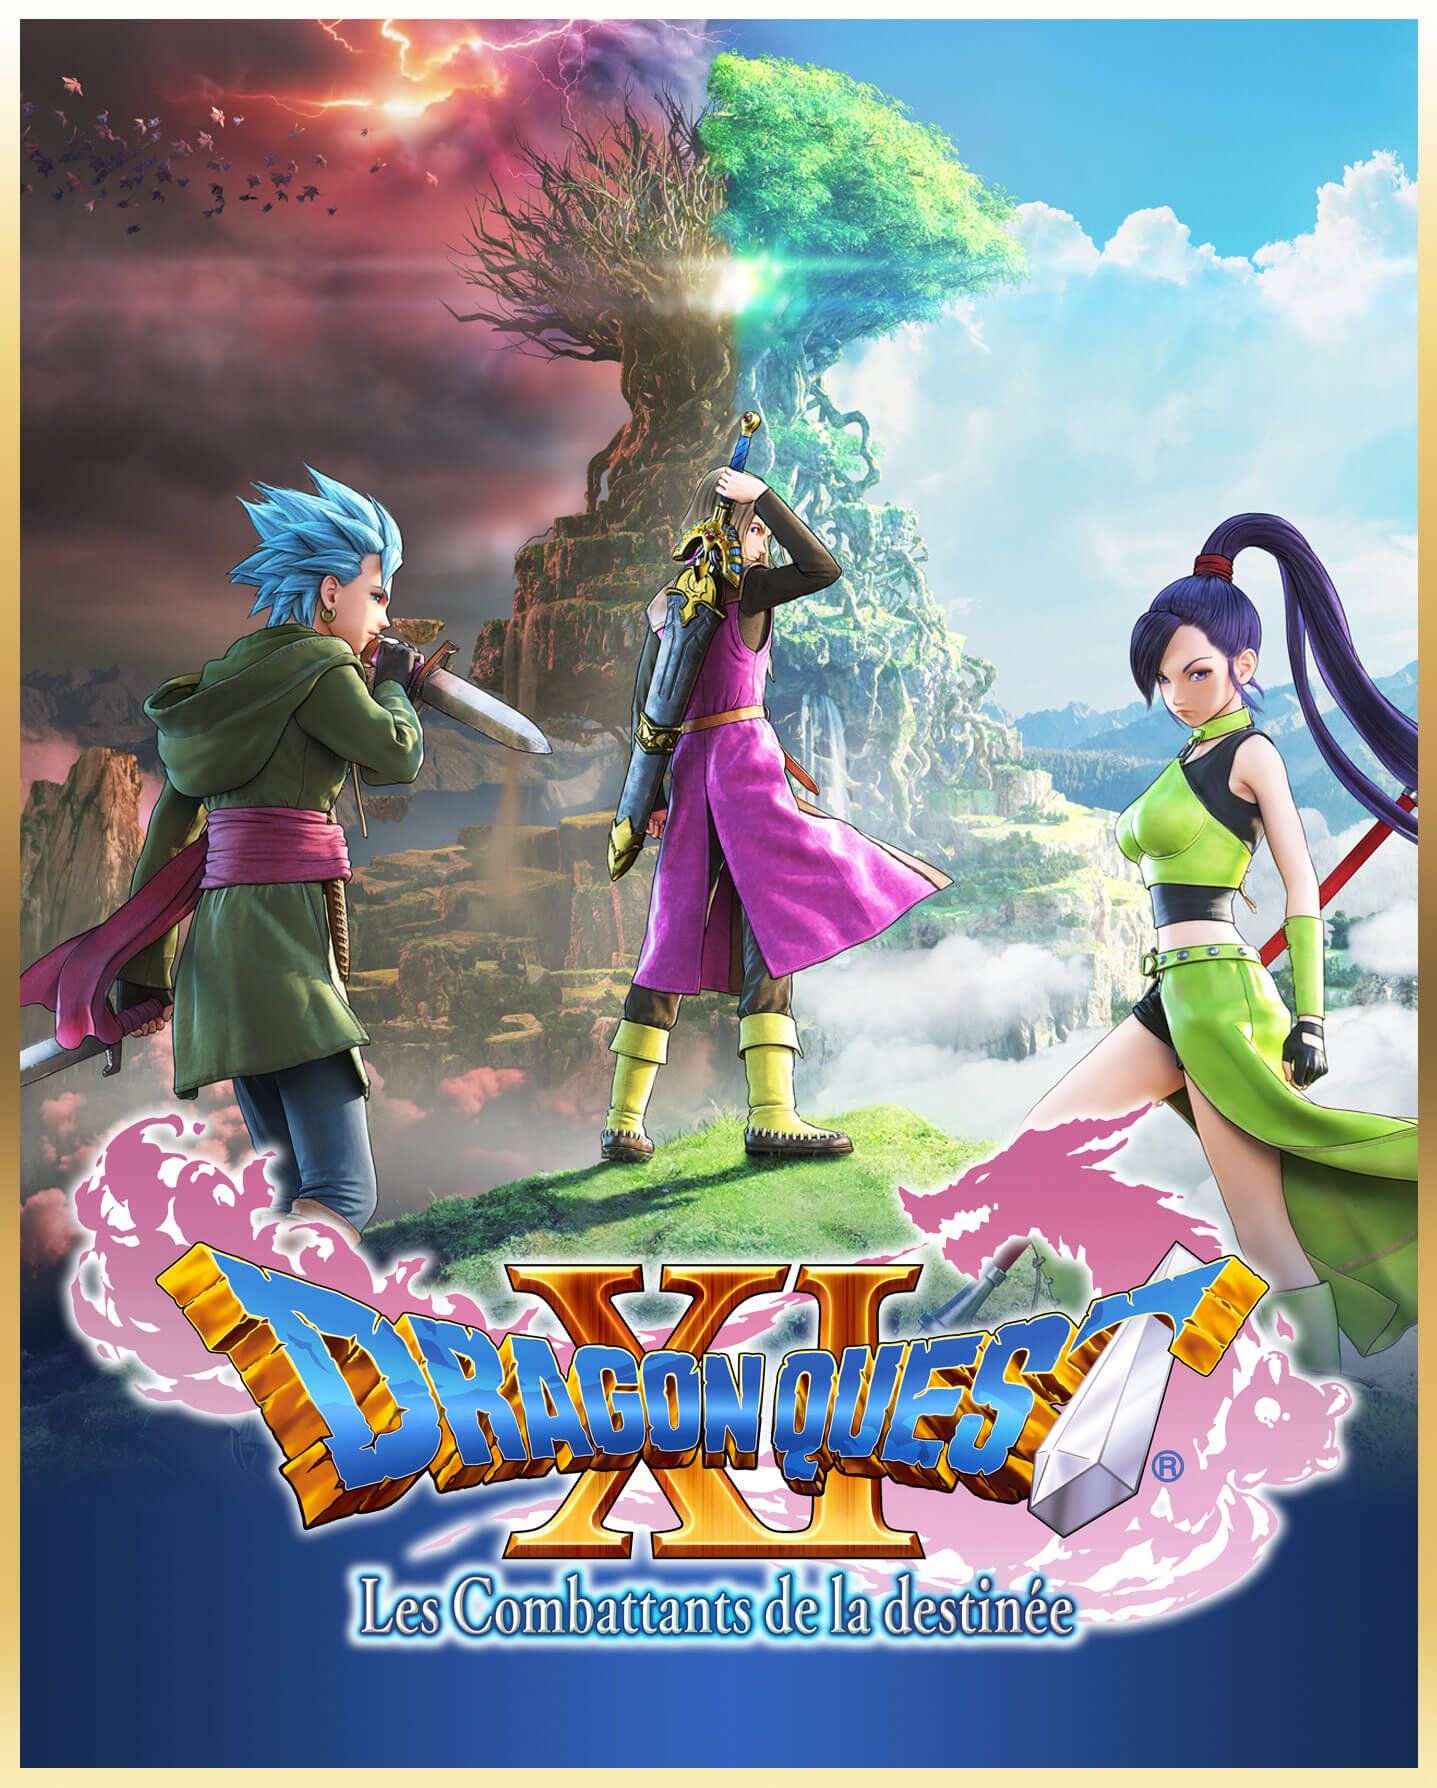 Dragon Quest Xi S Les Combattants De La Destinée Se Précise 04 Août 2020 Manga News